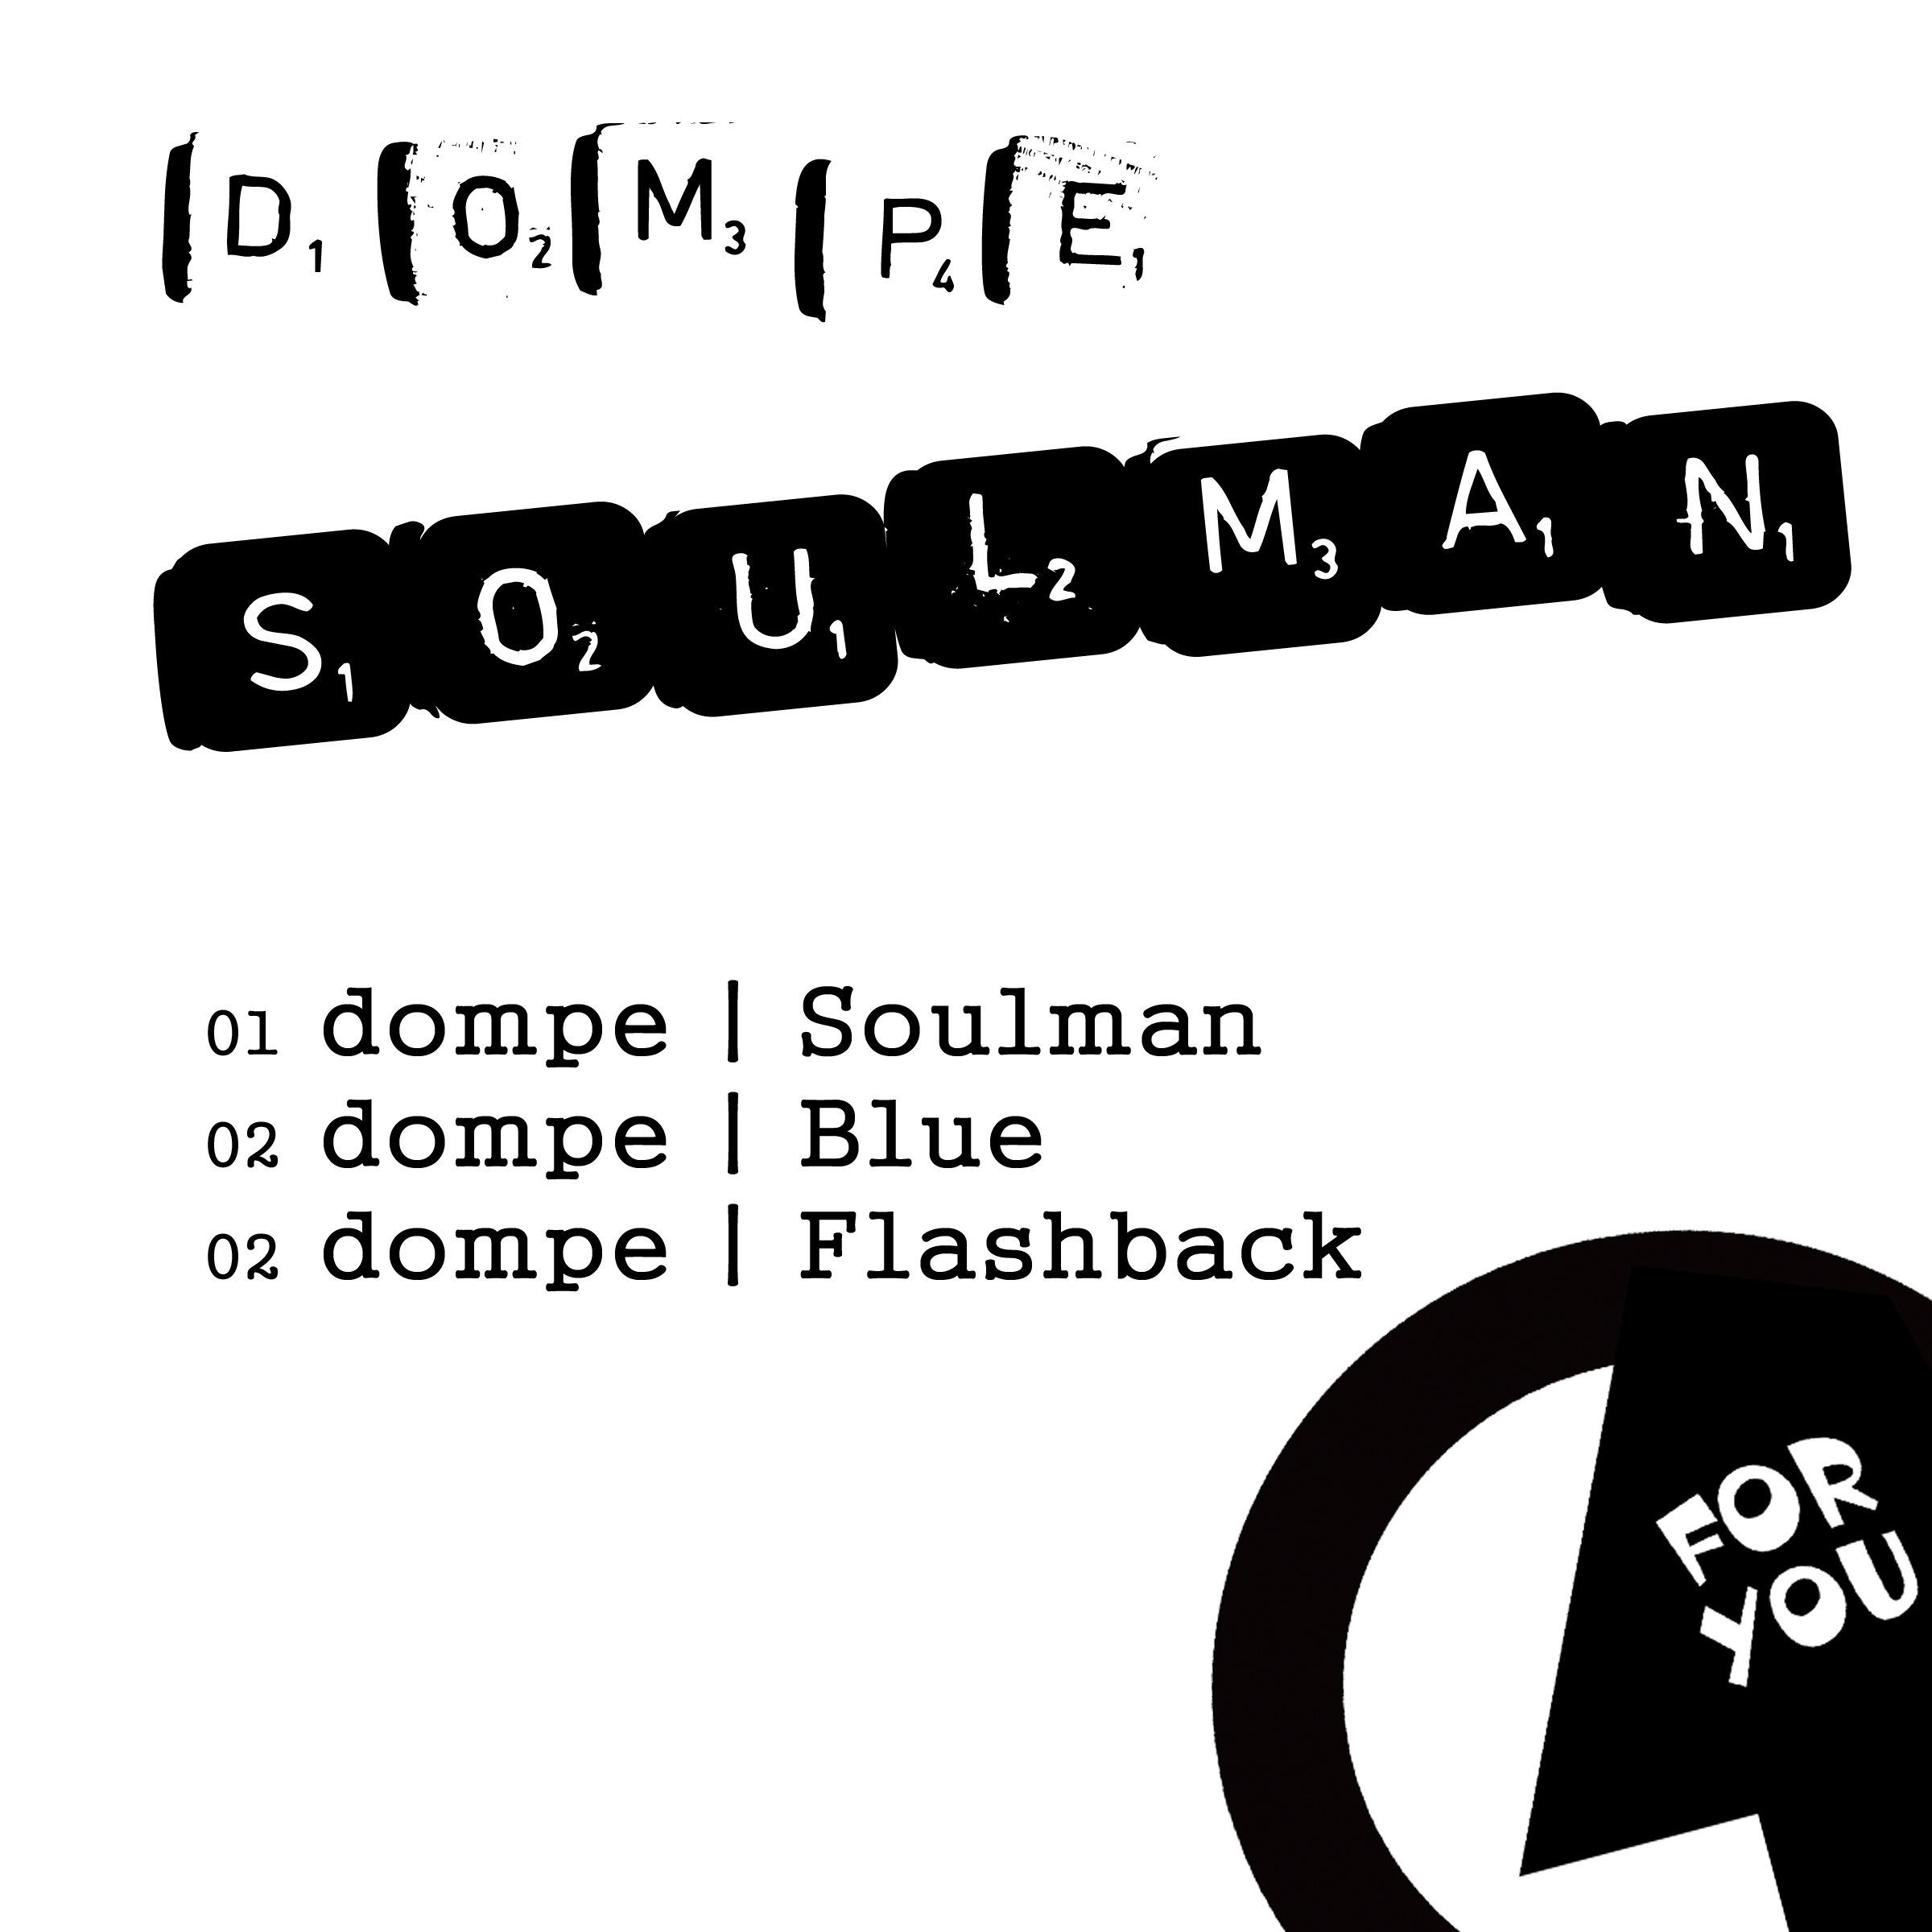 Soulman